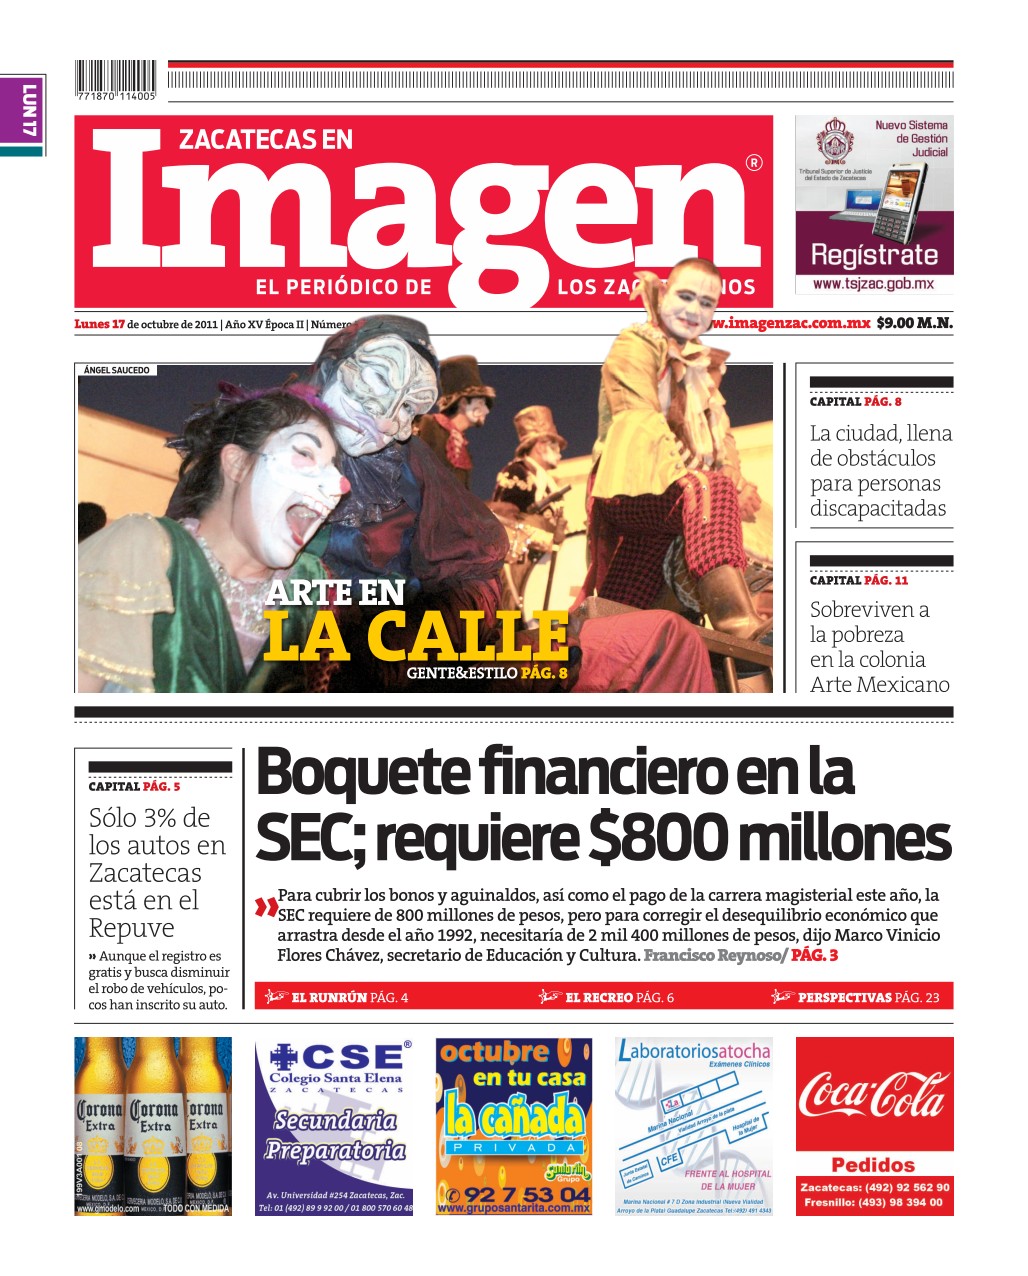 Imagen Zacatecas edición del 17 de Octubre 2011